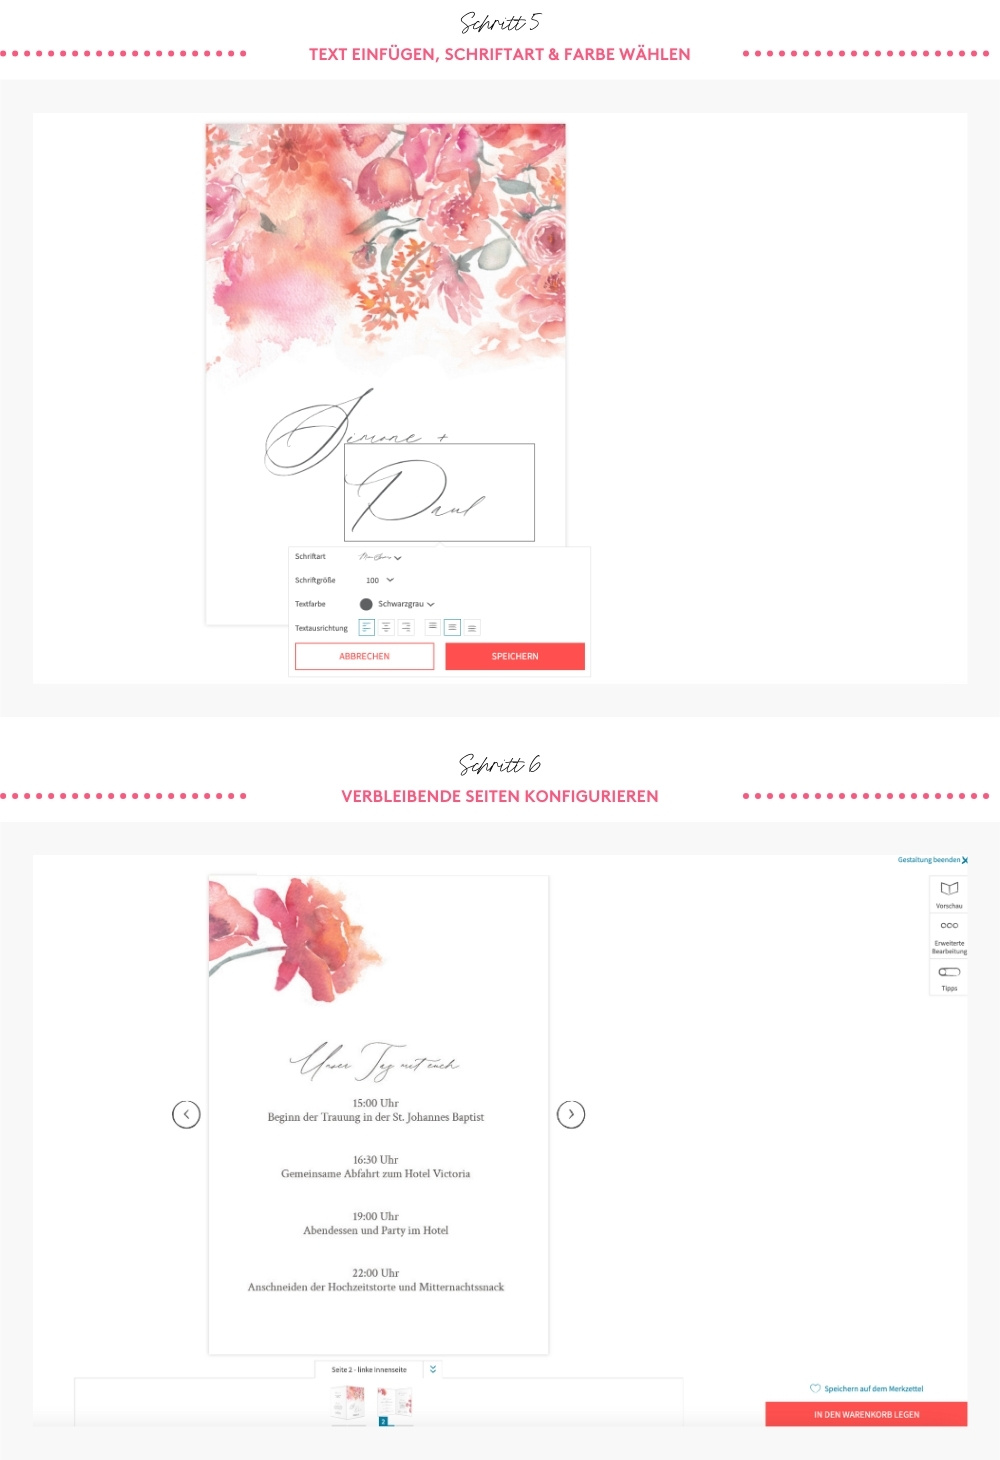 DIY Hochzeitseinladung auf Grundlage einer Blanko Formatvorlage. Konfiguration der Einladung nach persönlichen Wünsche und dem Upload eigener Design-Elementen. 